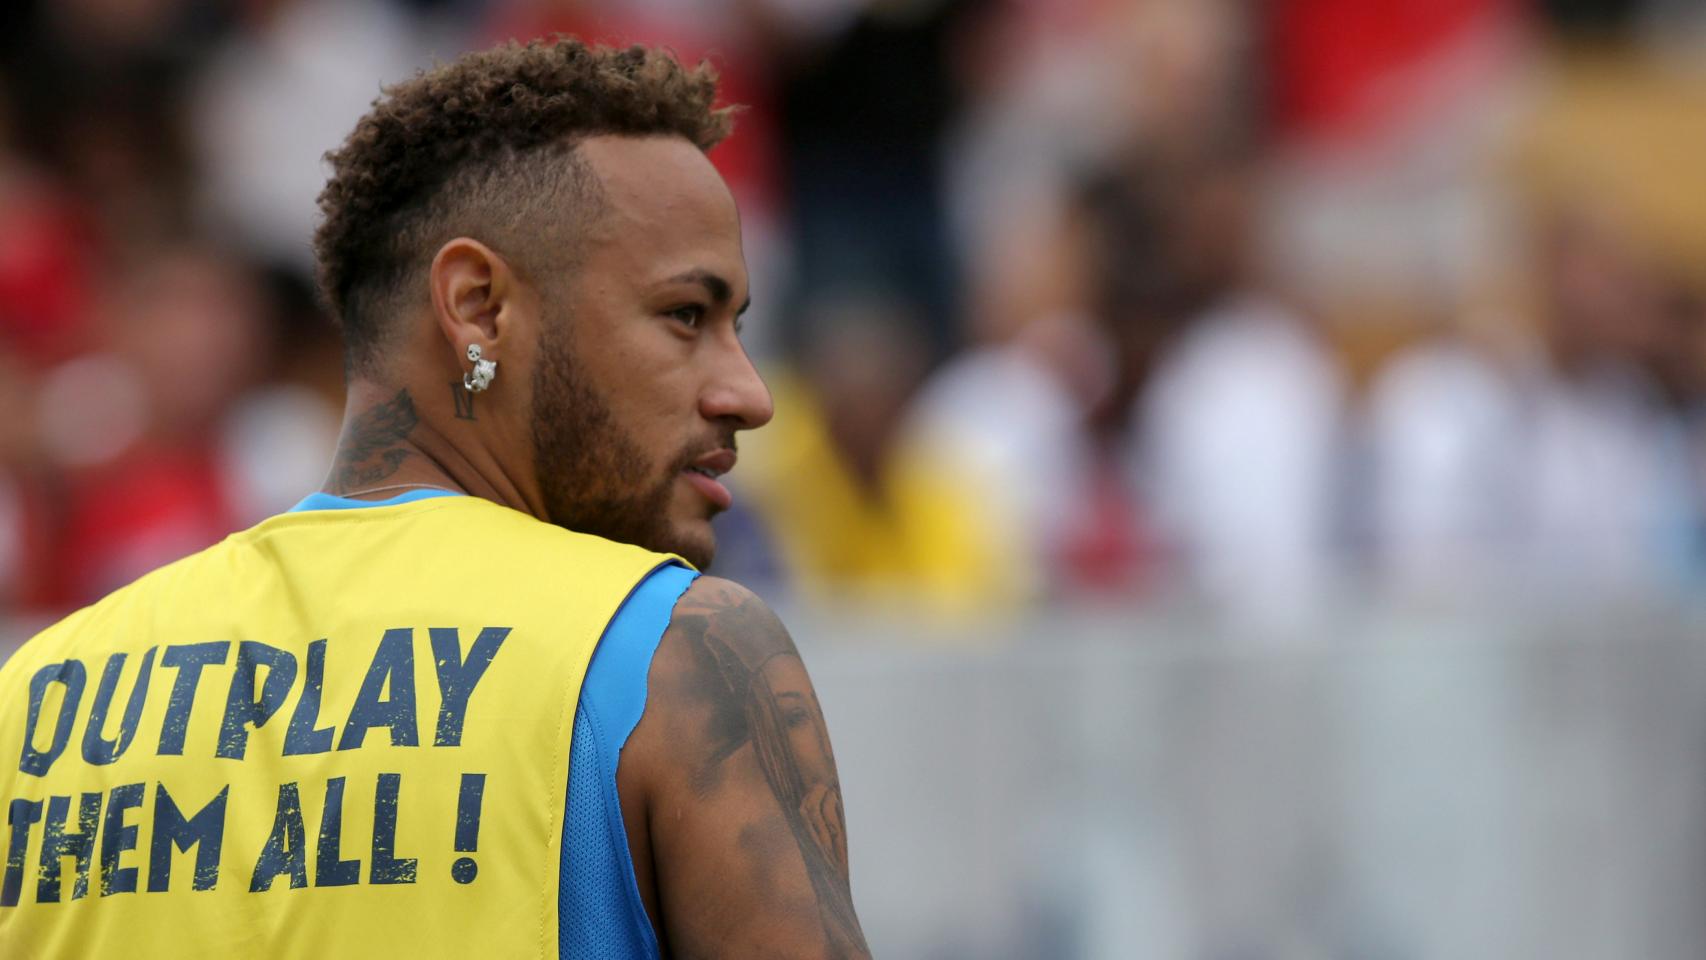 Neymar durante un acto en Brasil